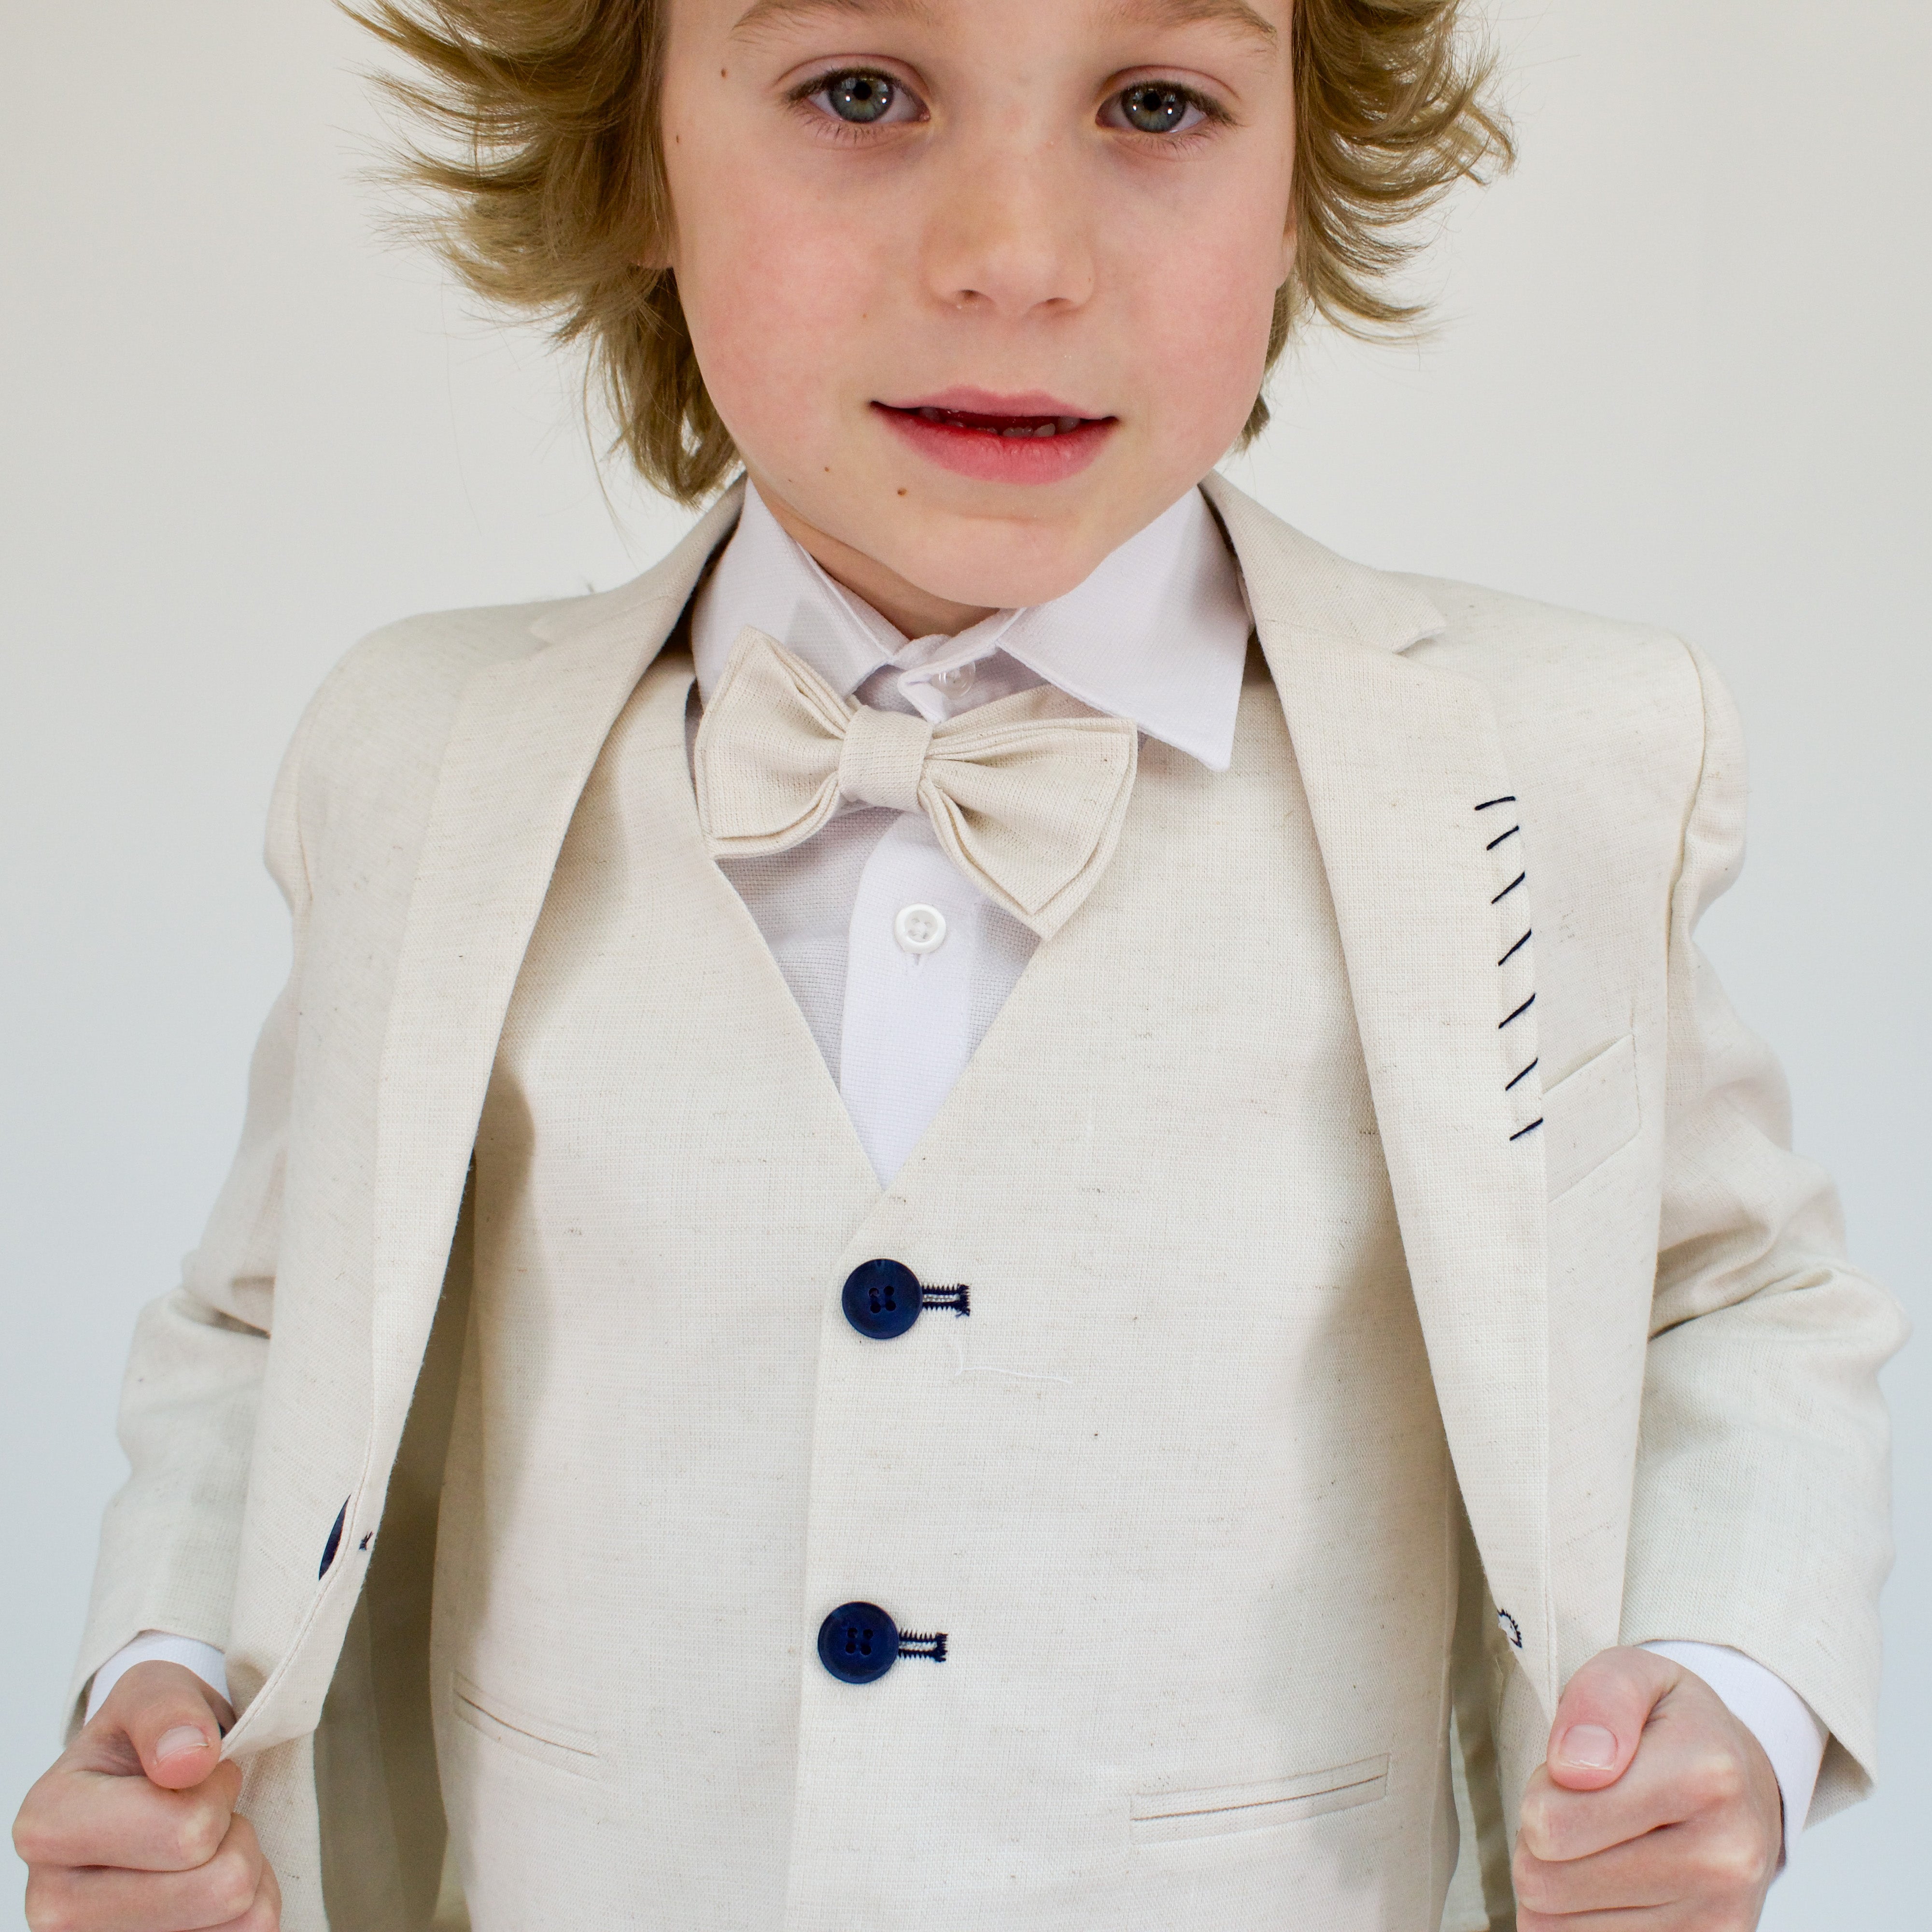 Linen Prince Boys Formal Suit